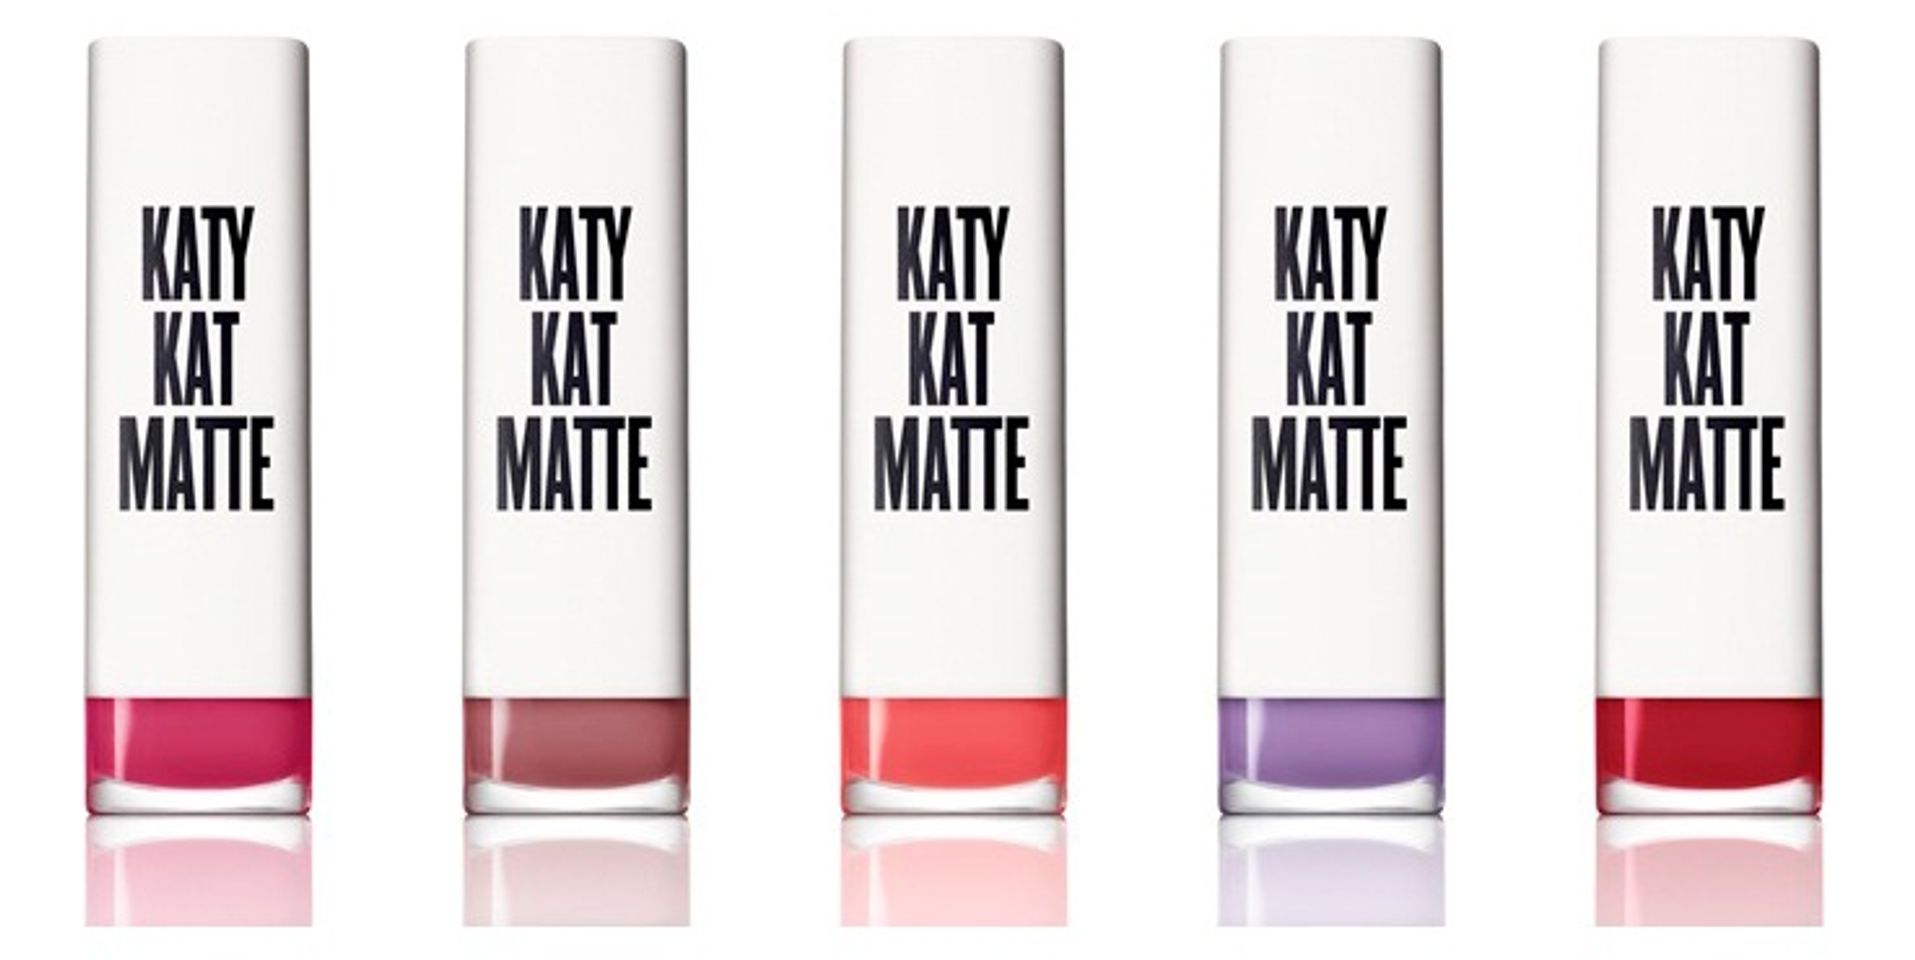 Son thỏi Covergirl Katy Kat Matte Lipstick là dòng son kết hợp giữa hãng mỹ phẩ CoverGirl và cô nàng ca sĩ nổi tiếng Katy Perry với chất son siêu lì 